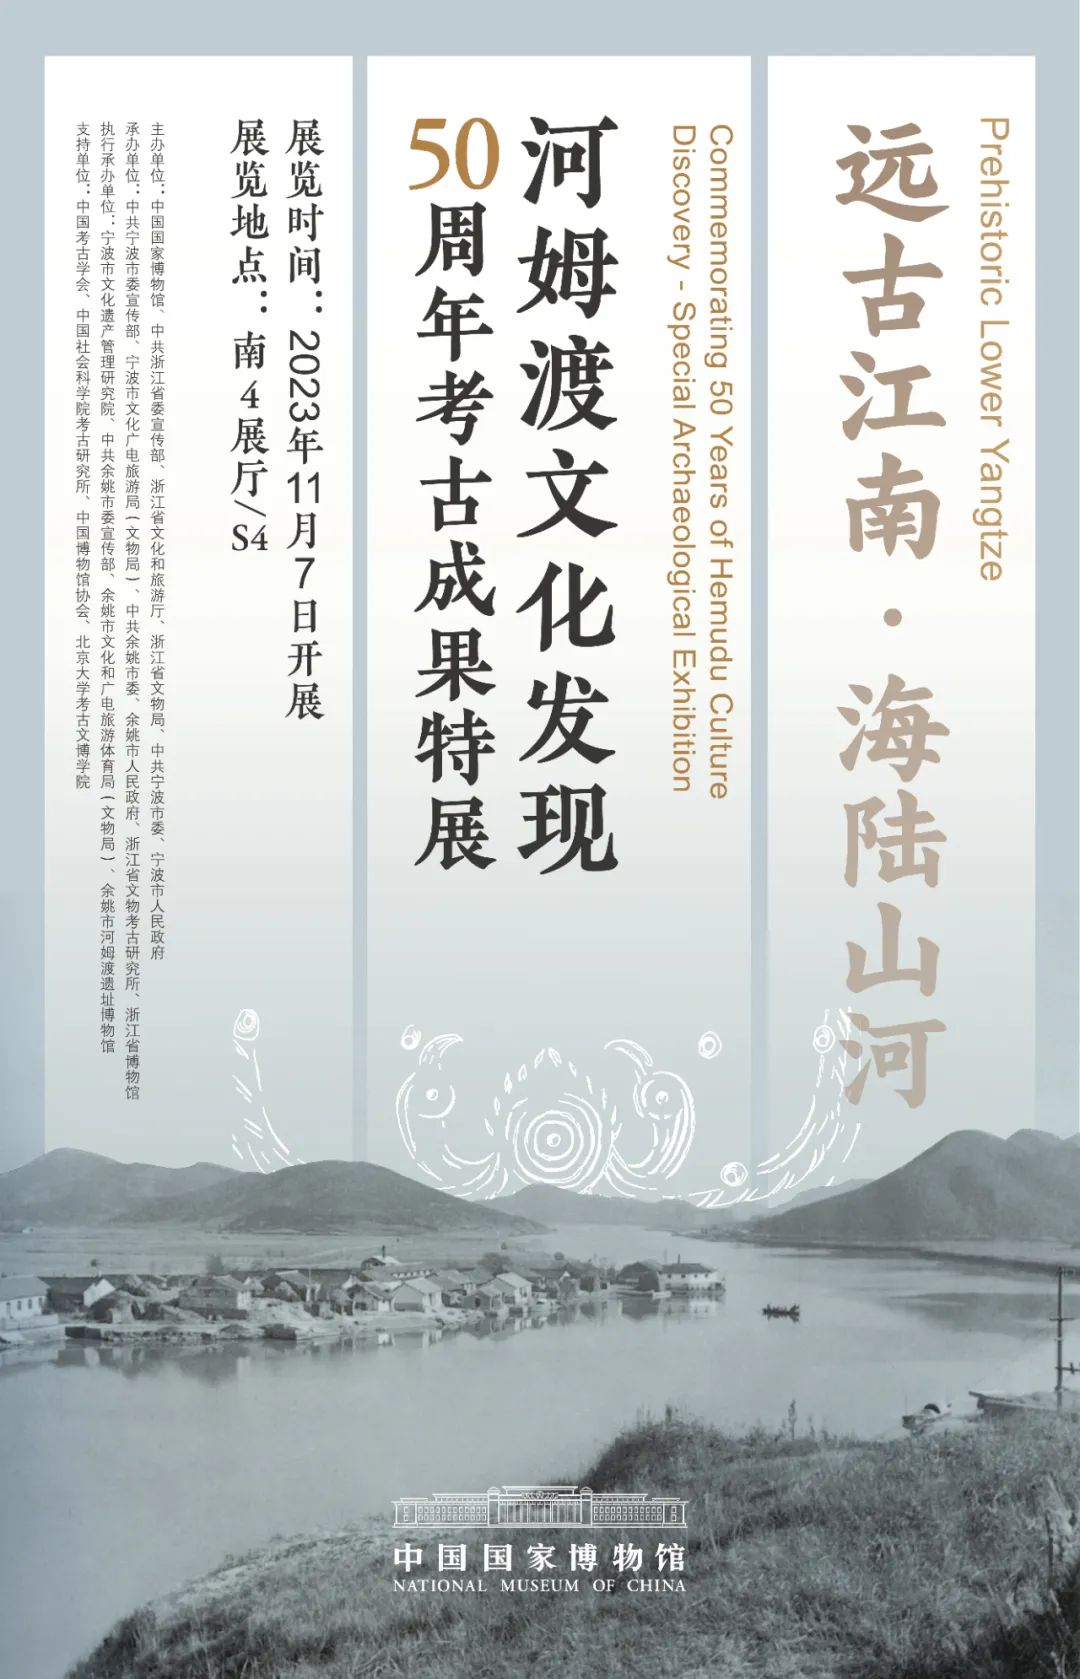 十二月，北京地区文博新展邀您来赏